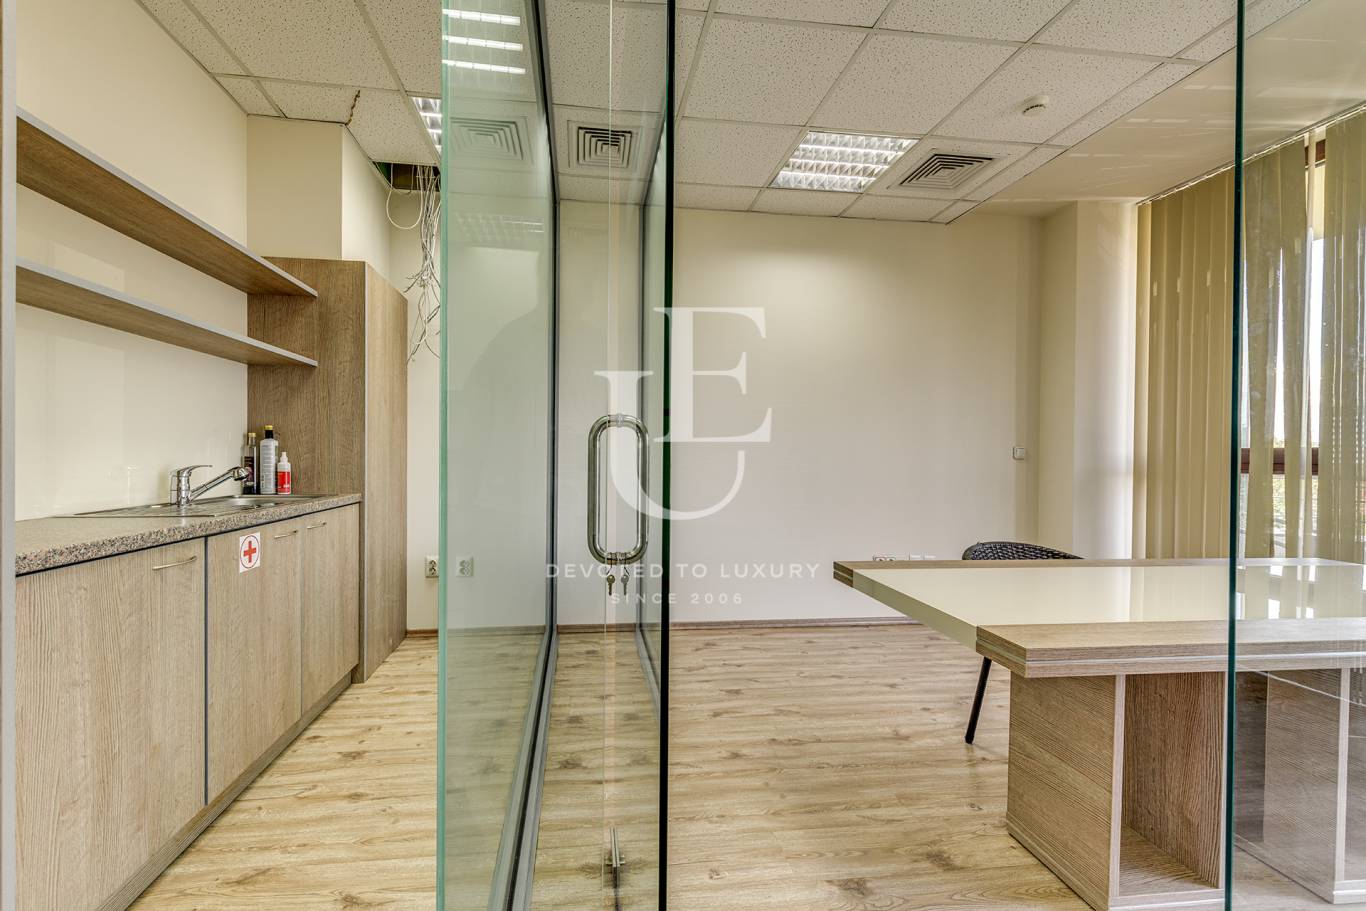 Офис под наем в София, Студентски град - код на имота: N17701 - image 3